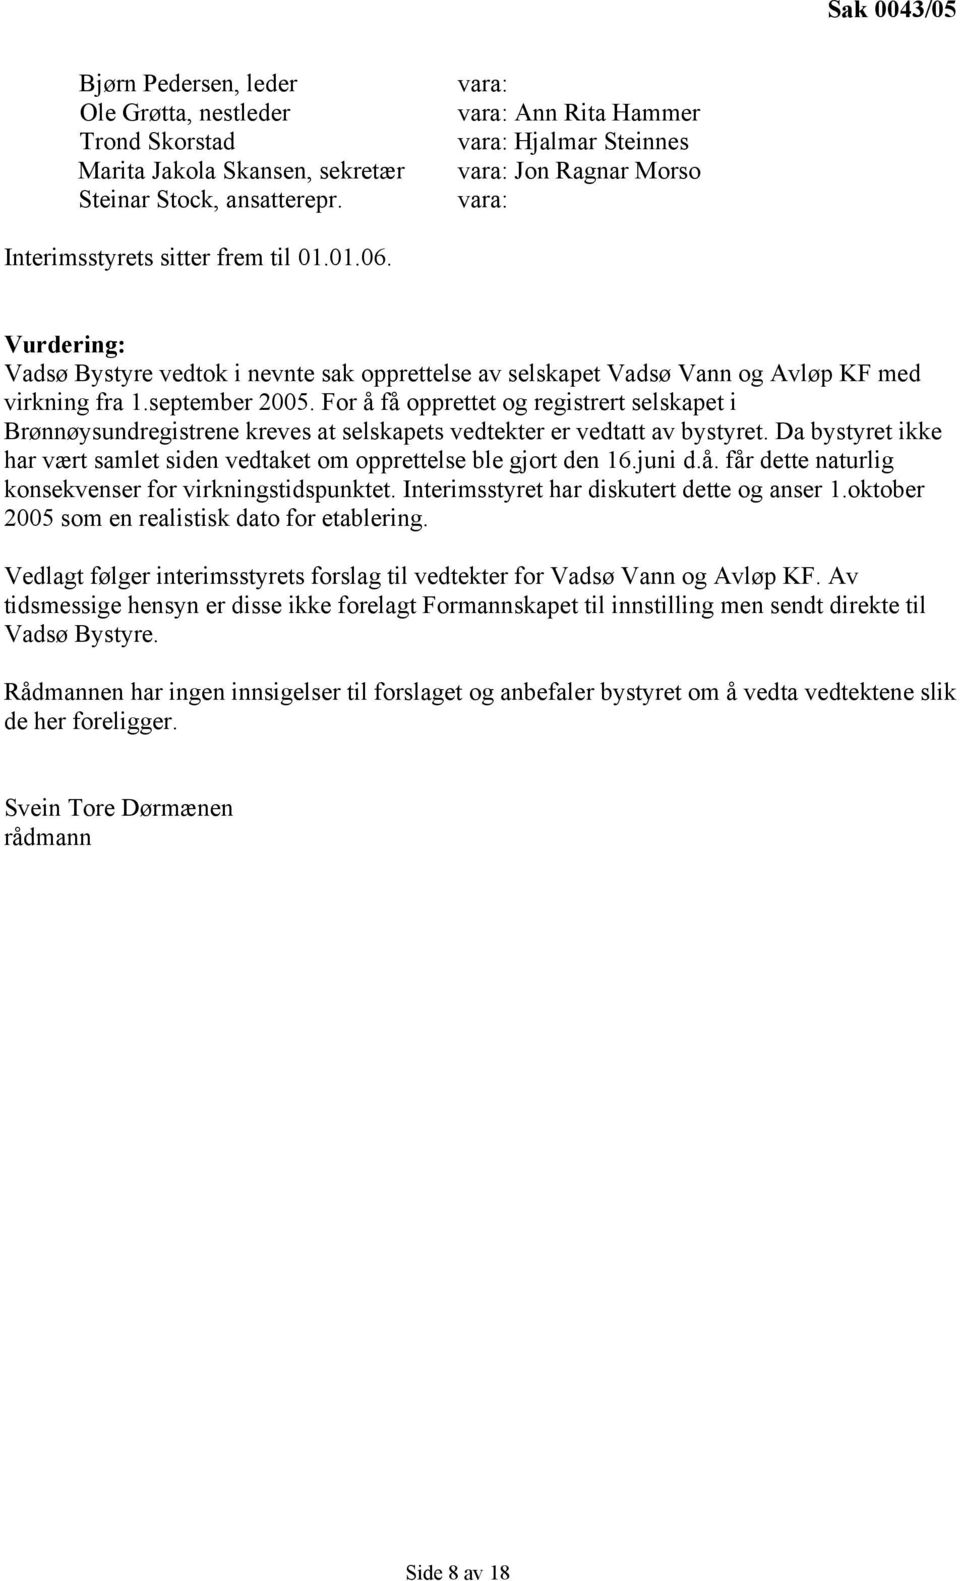 Vurdering: Vadsø Bystyre vedtok i nevnte sak opprettelse av selskapet Vadsø Vann og Avløp KF med virkning fra 1.september 2005.